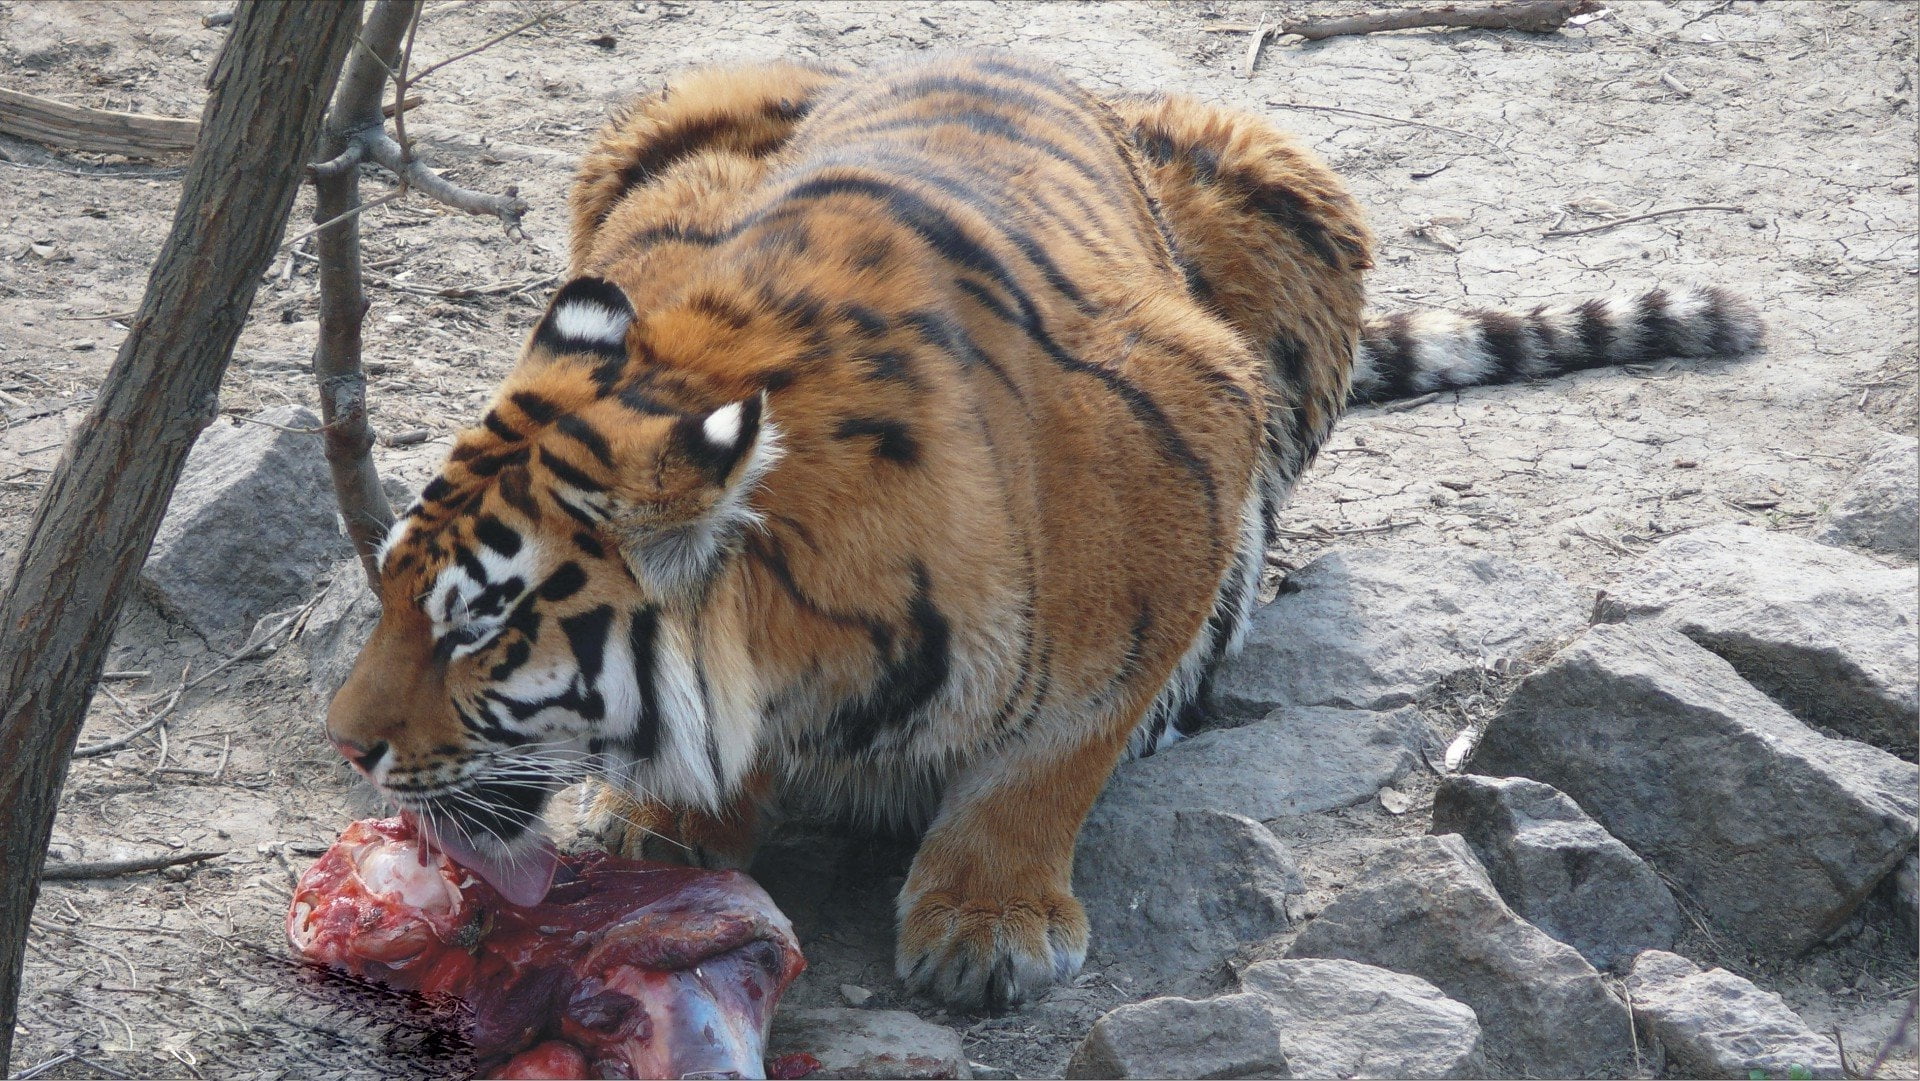 Bengal Tiger eating raw meat at daytime